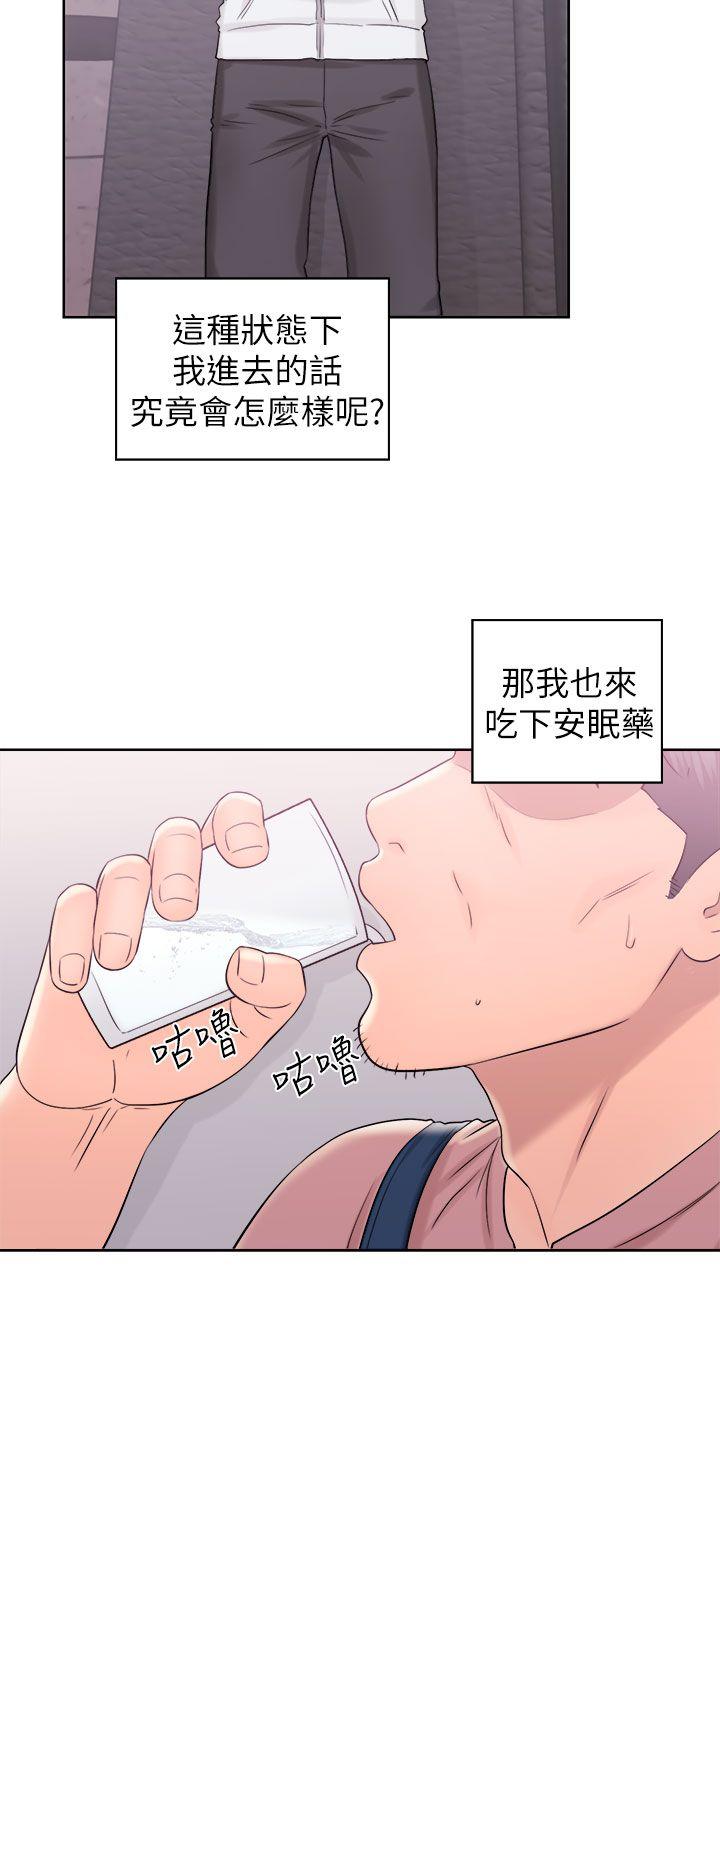 韩国污漫画 青春:逆齡小鮮肉 第10话 4